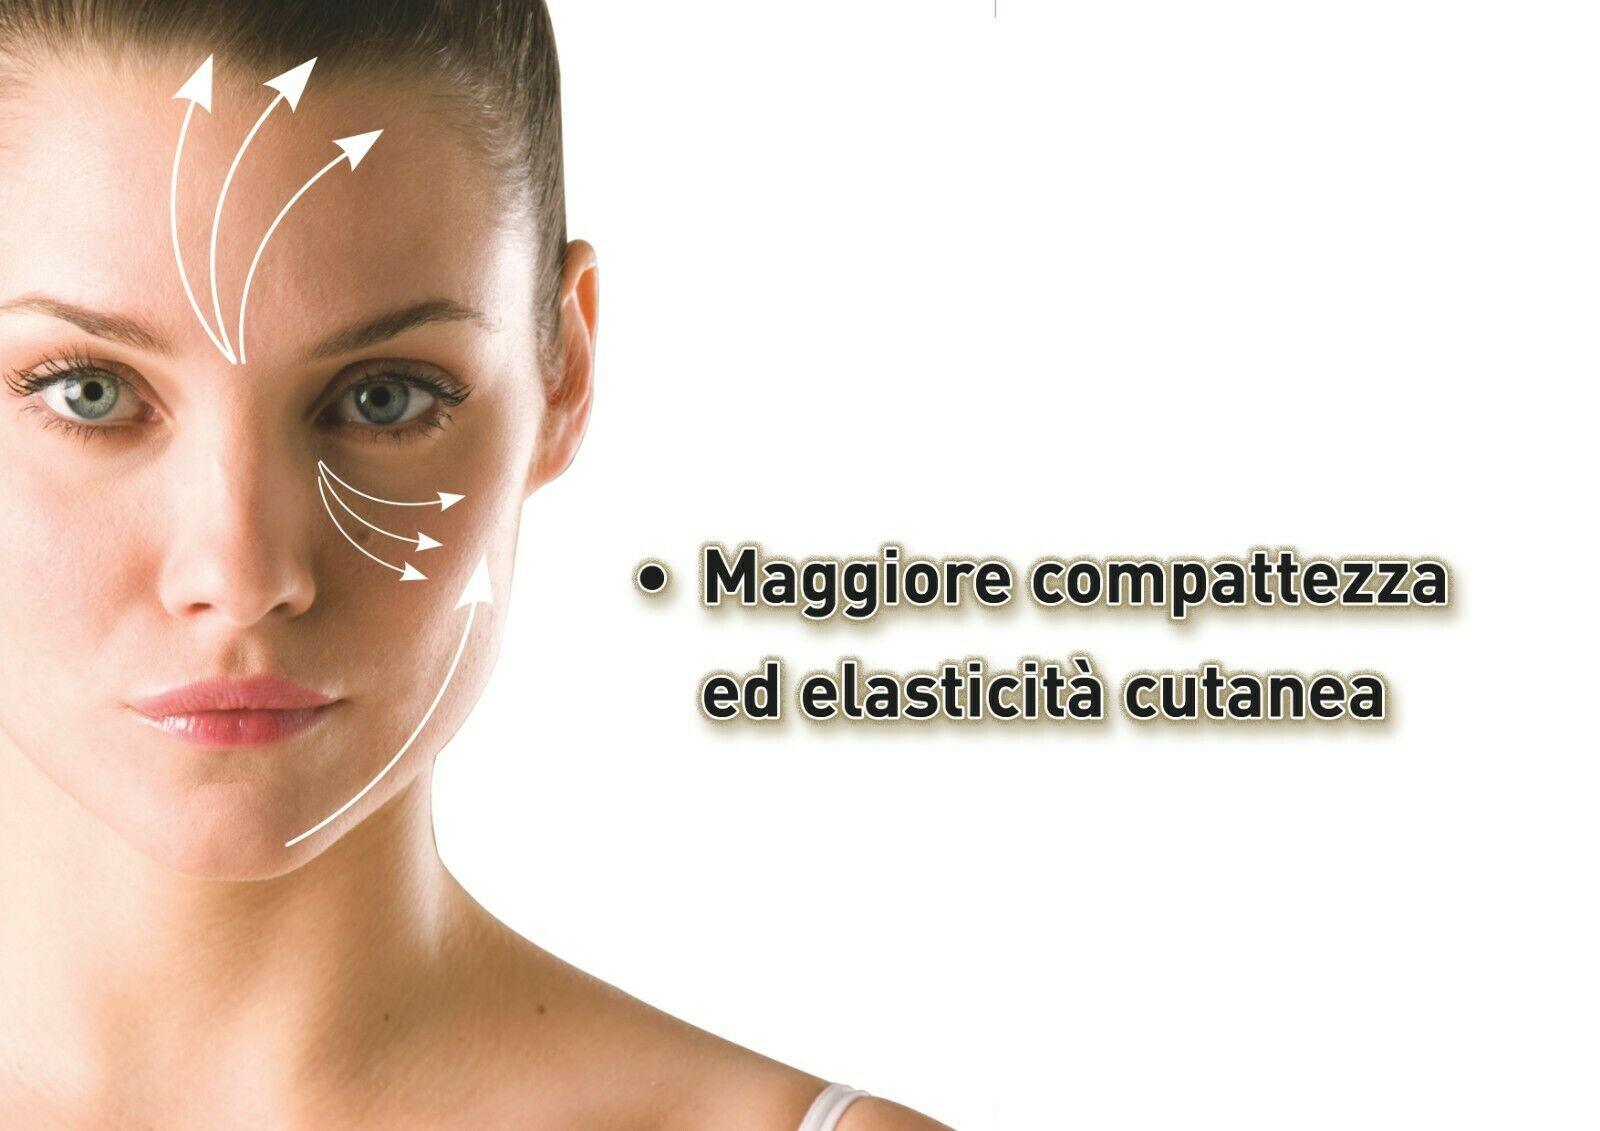 Photonlife RELUX Self Beauty - Massaggio Sportivo & Lifting Naturale - I migliori prodotti Made in Italy da Fiera di Monza Shop - Solo 289€! Acquista subito su Fiera di Monza Shop!